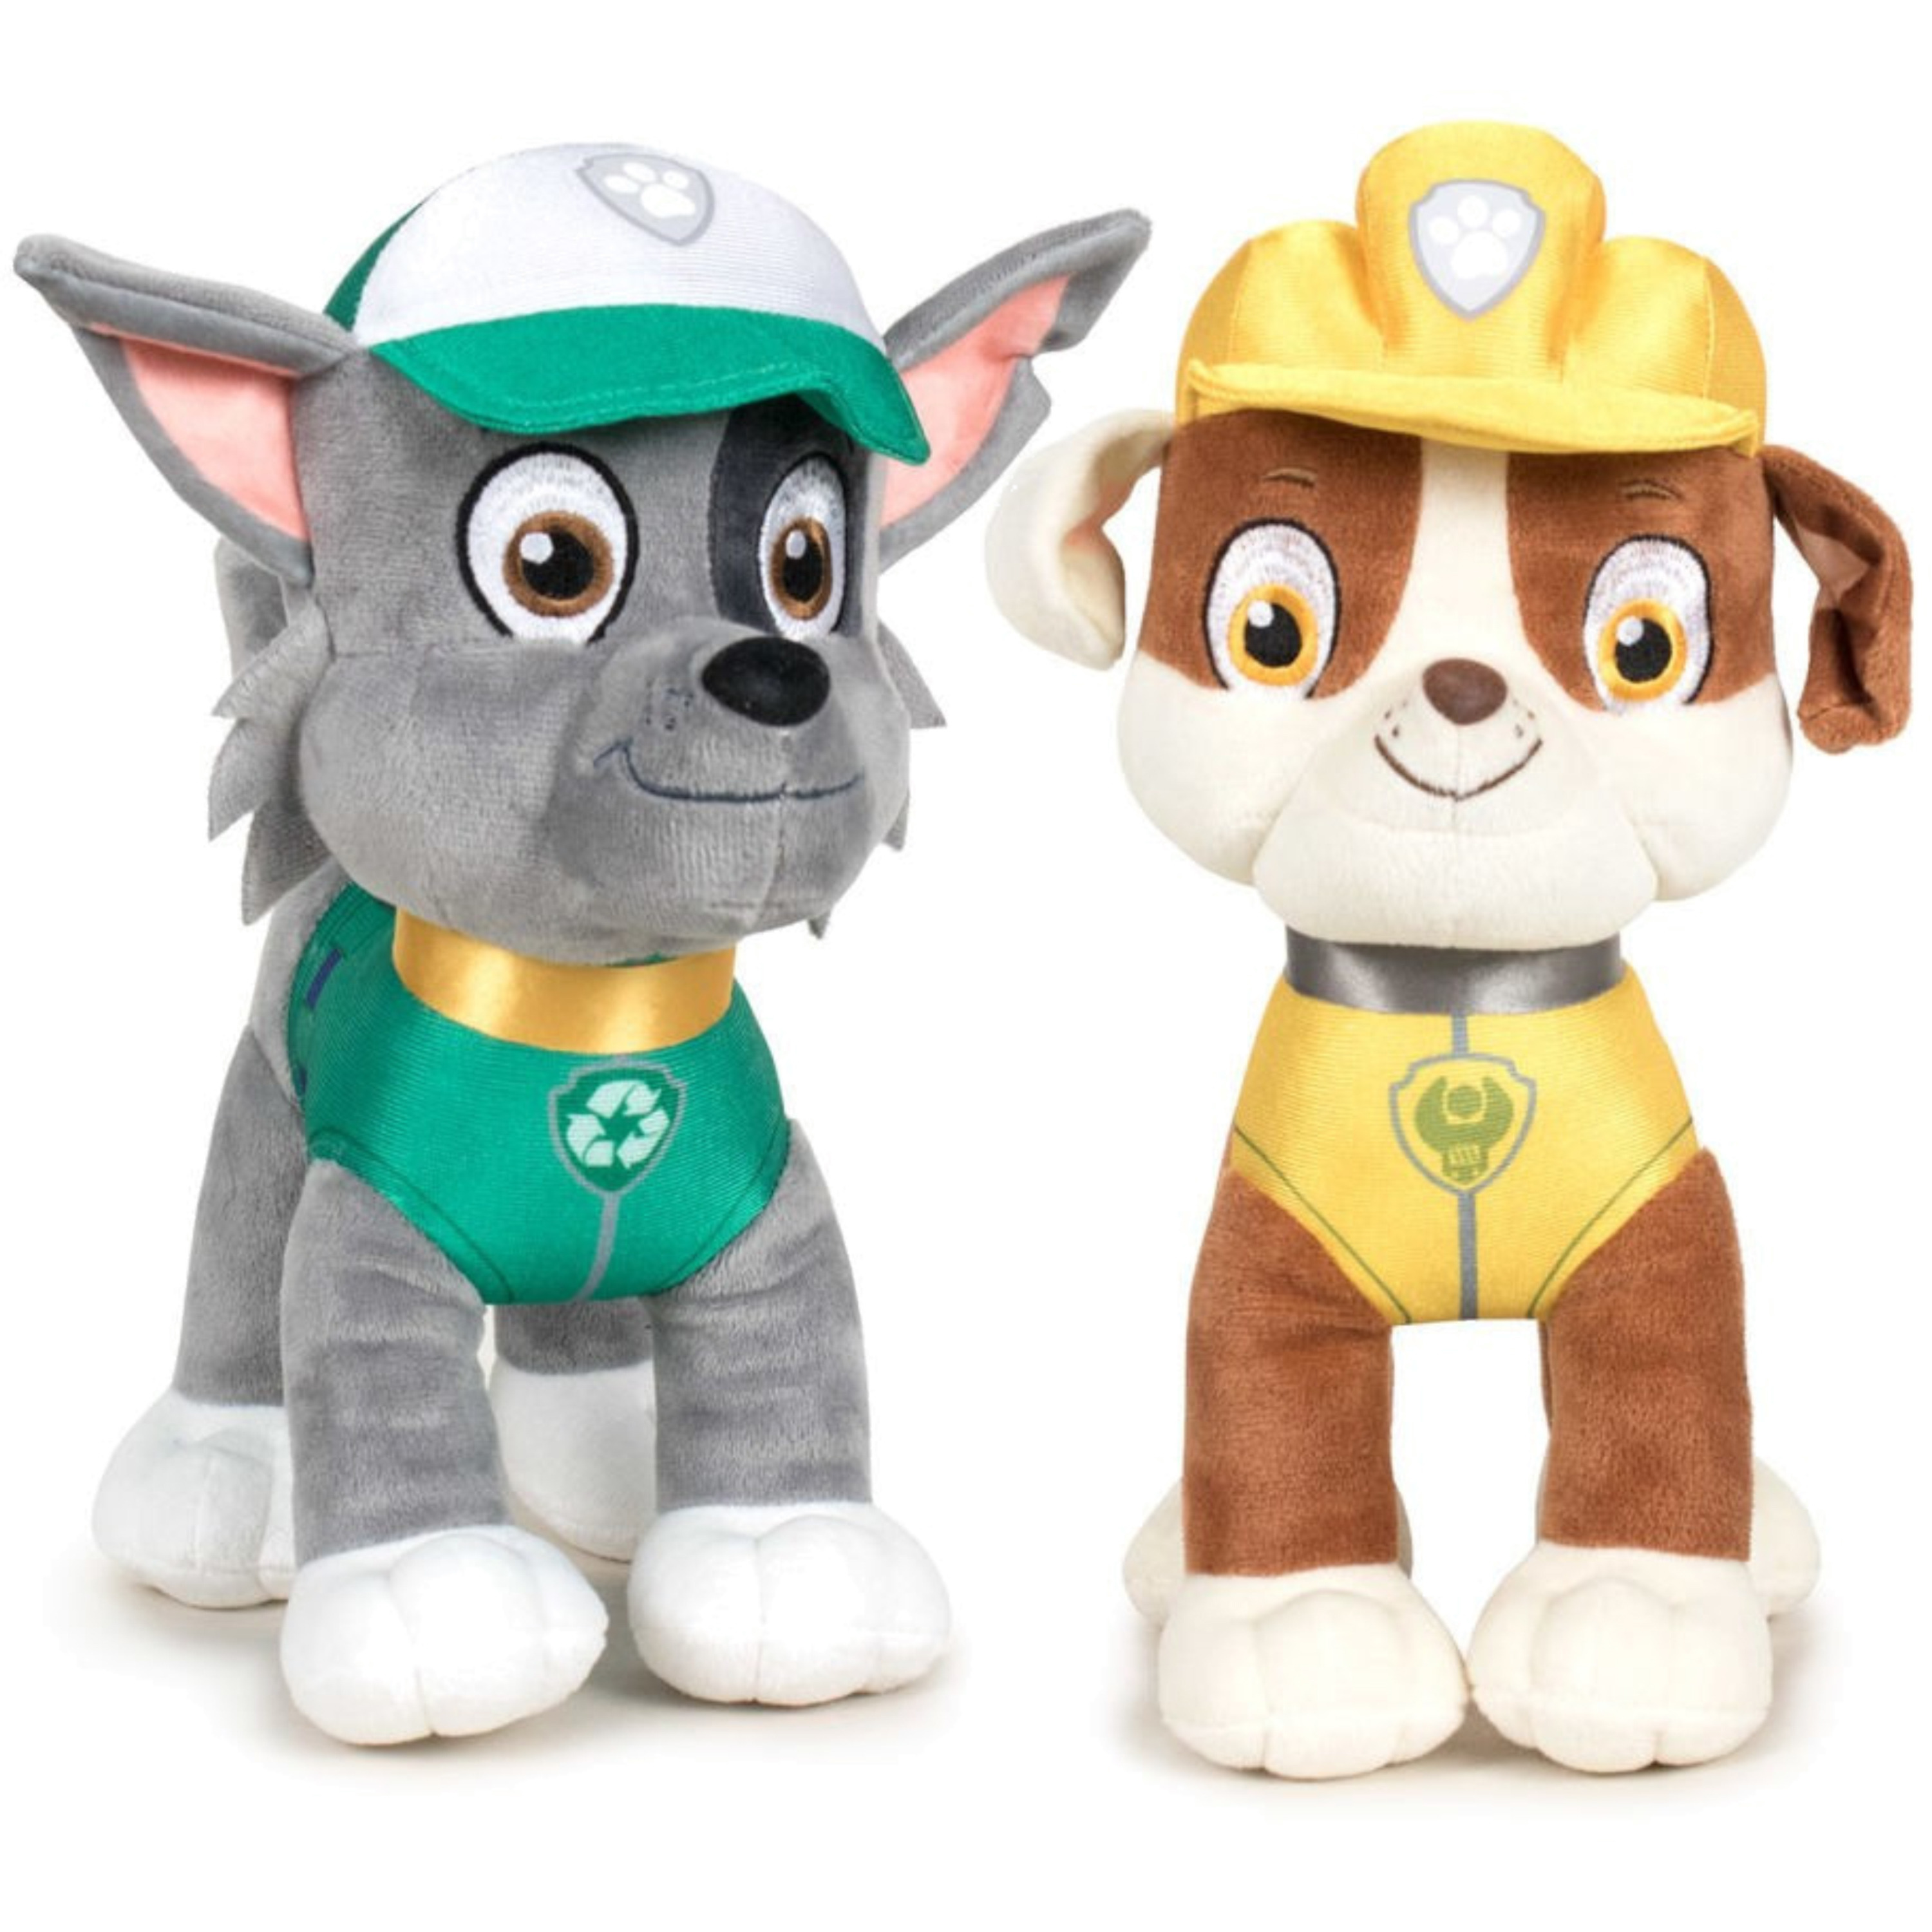 Paw Patrol figuren speelgoed knuffels set van 2x karakters Rocky en Rubble 19 cm